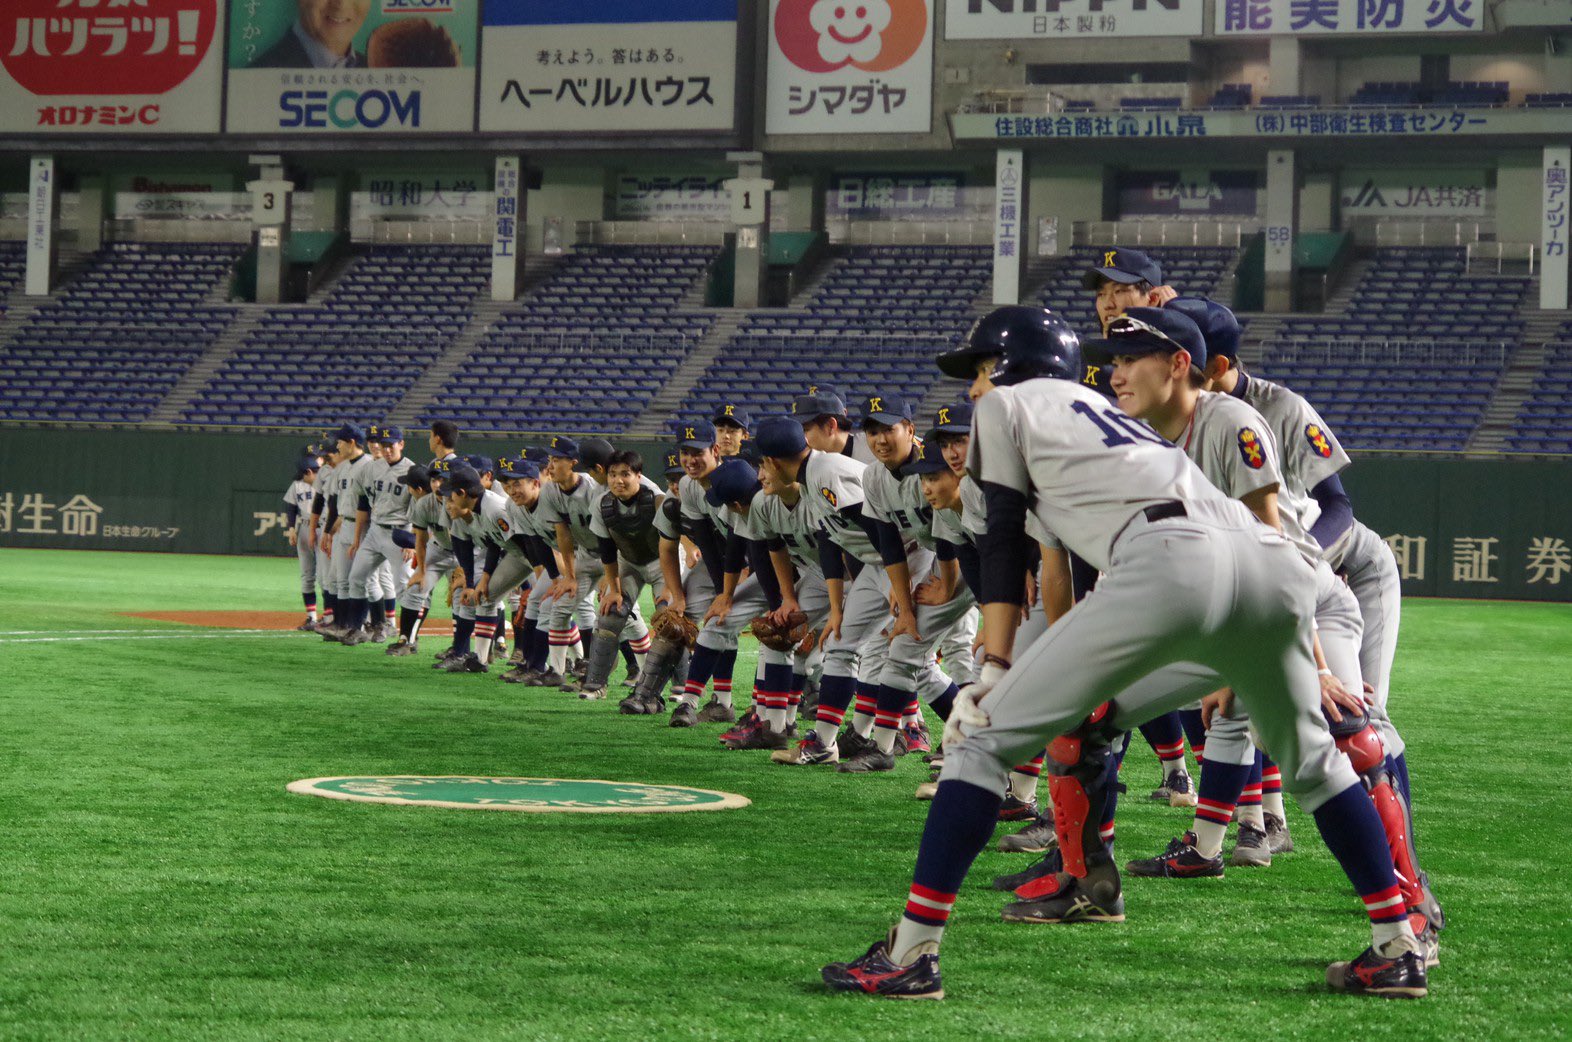 تويتر 東京六大学理工系硬式野球連盟 على تويتر 東京ドーム 例年6月に東京 ドームで試合を行ってきました 普段は足を踏み入れない場所で思いきりプレーできる貴重な機会 時期 場所は未定ですが 今年もプロの球場をお借りしたイベントを企画中 選手だけでなく